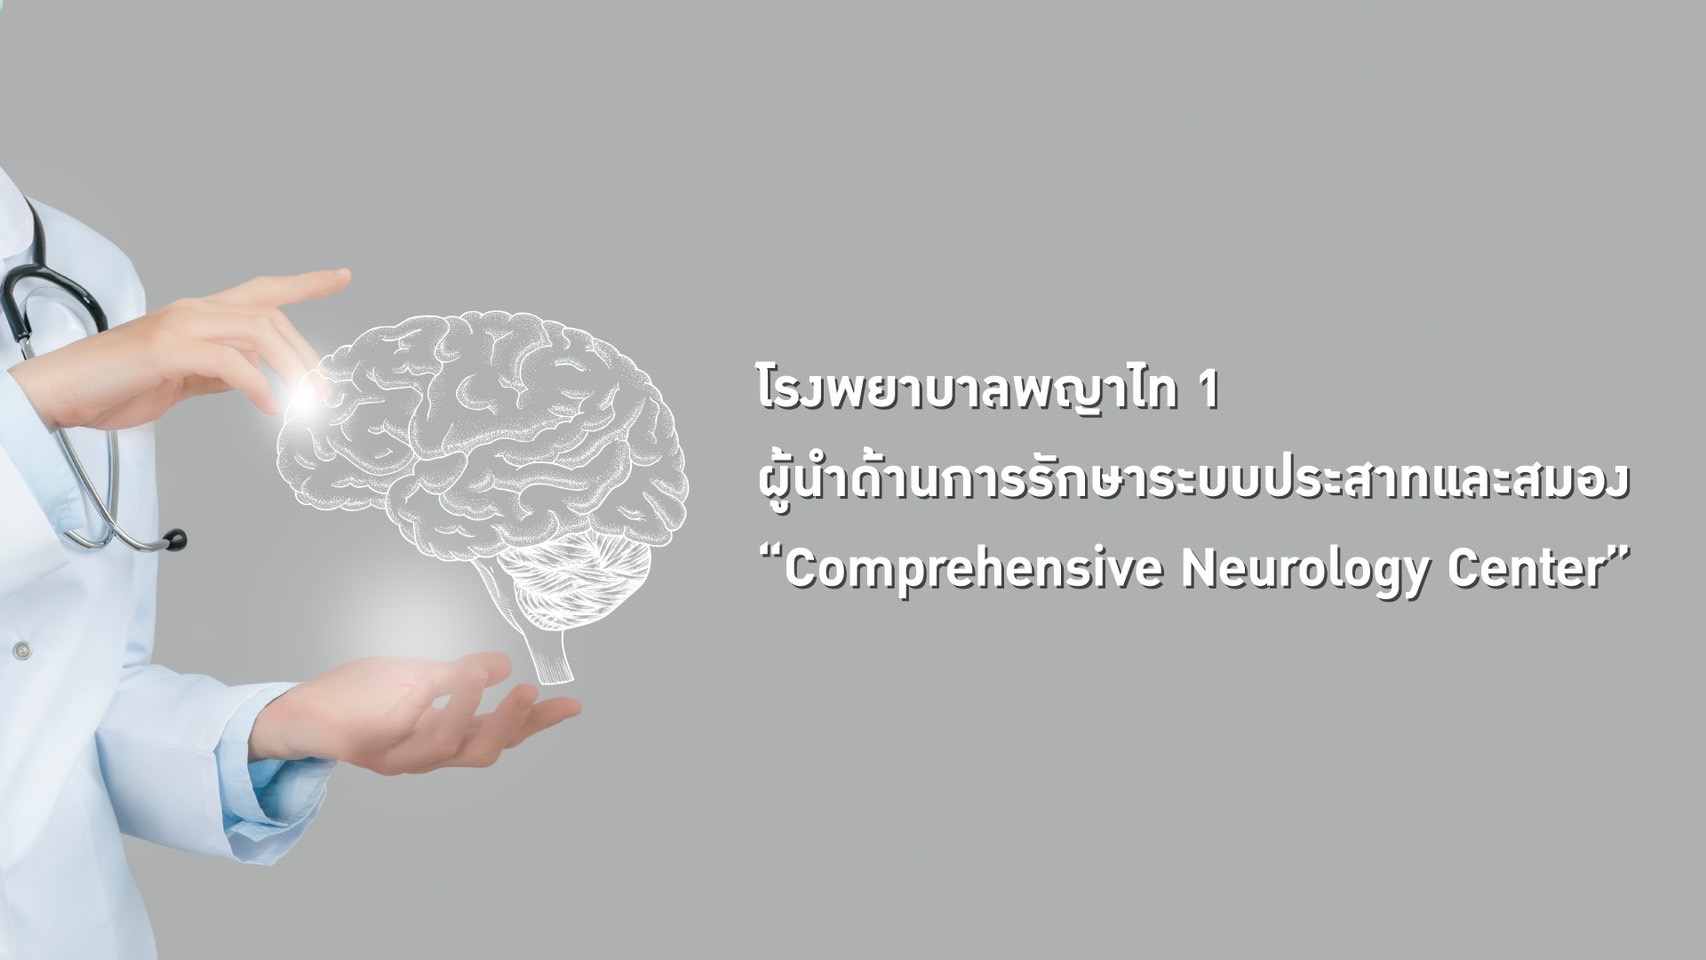 โรงพยาบาล พญาไท 1 ผู้นำด้านการรักษาระบบประสาทและสมอง “Comprehensive Neurology Center”